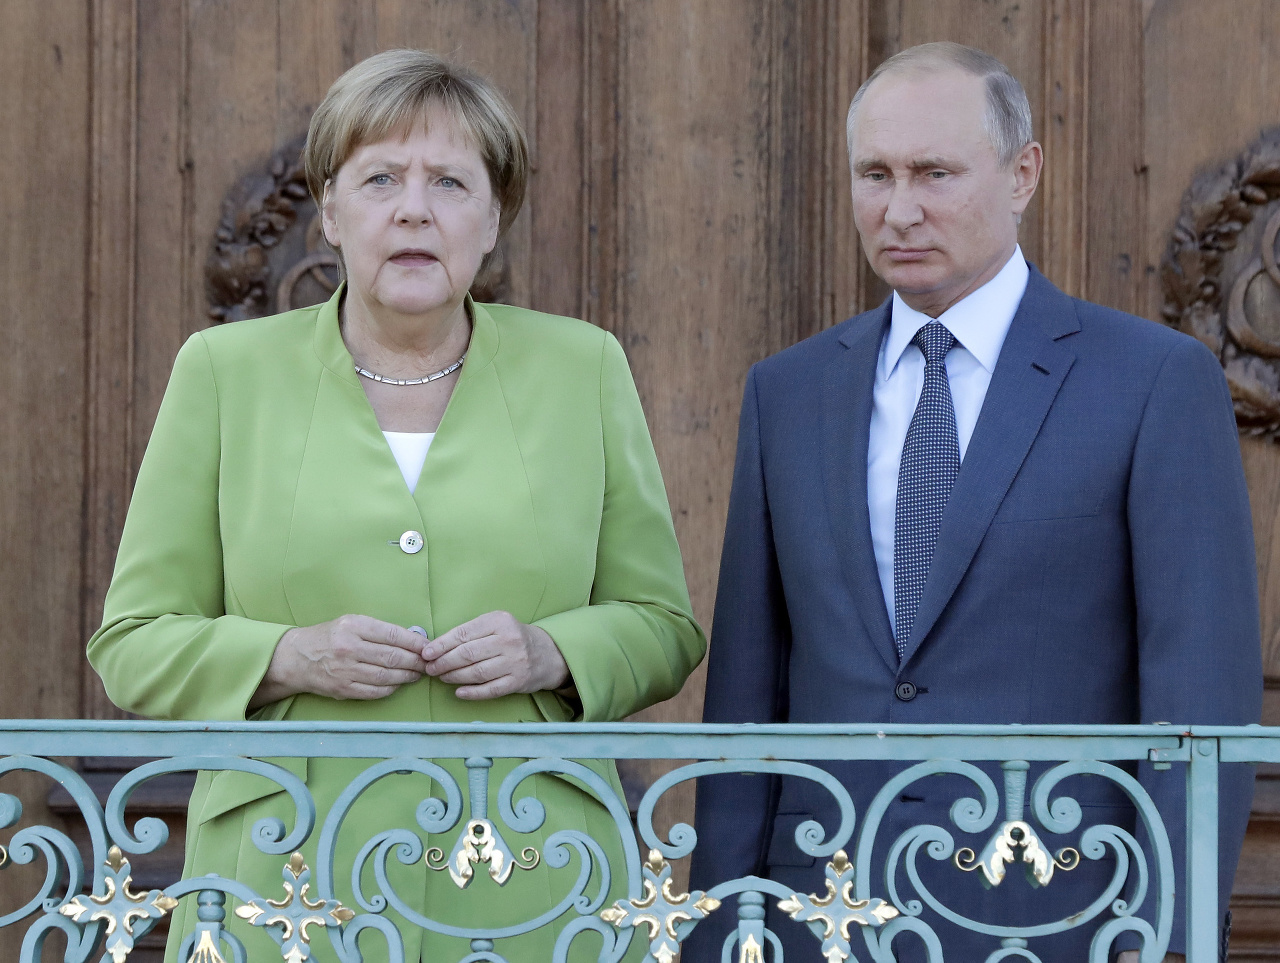 Nemecká kancelárka Angela Merkelová počas spoločnej tlačovej konferencie s ruským prezidentom Vladimirom Putinom